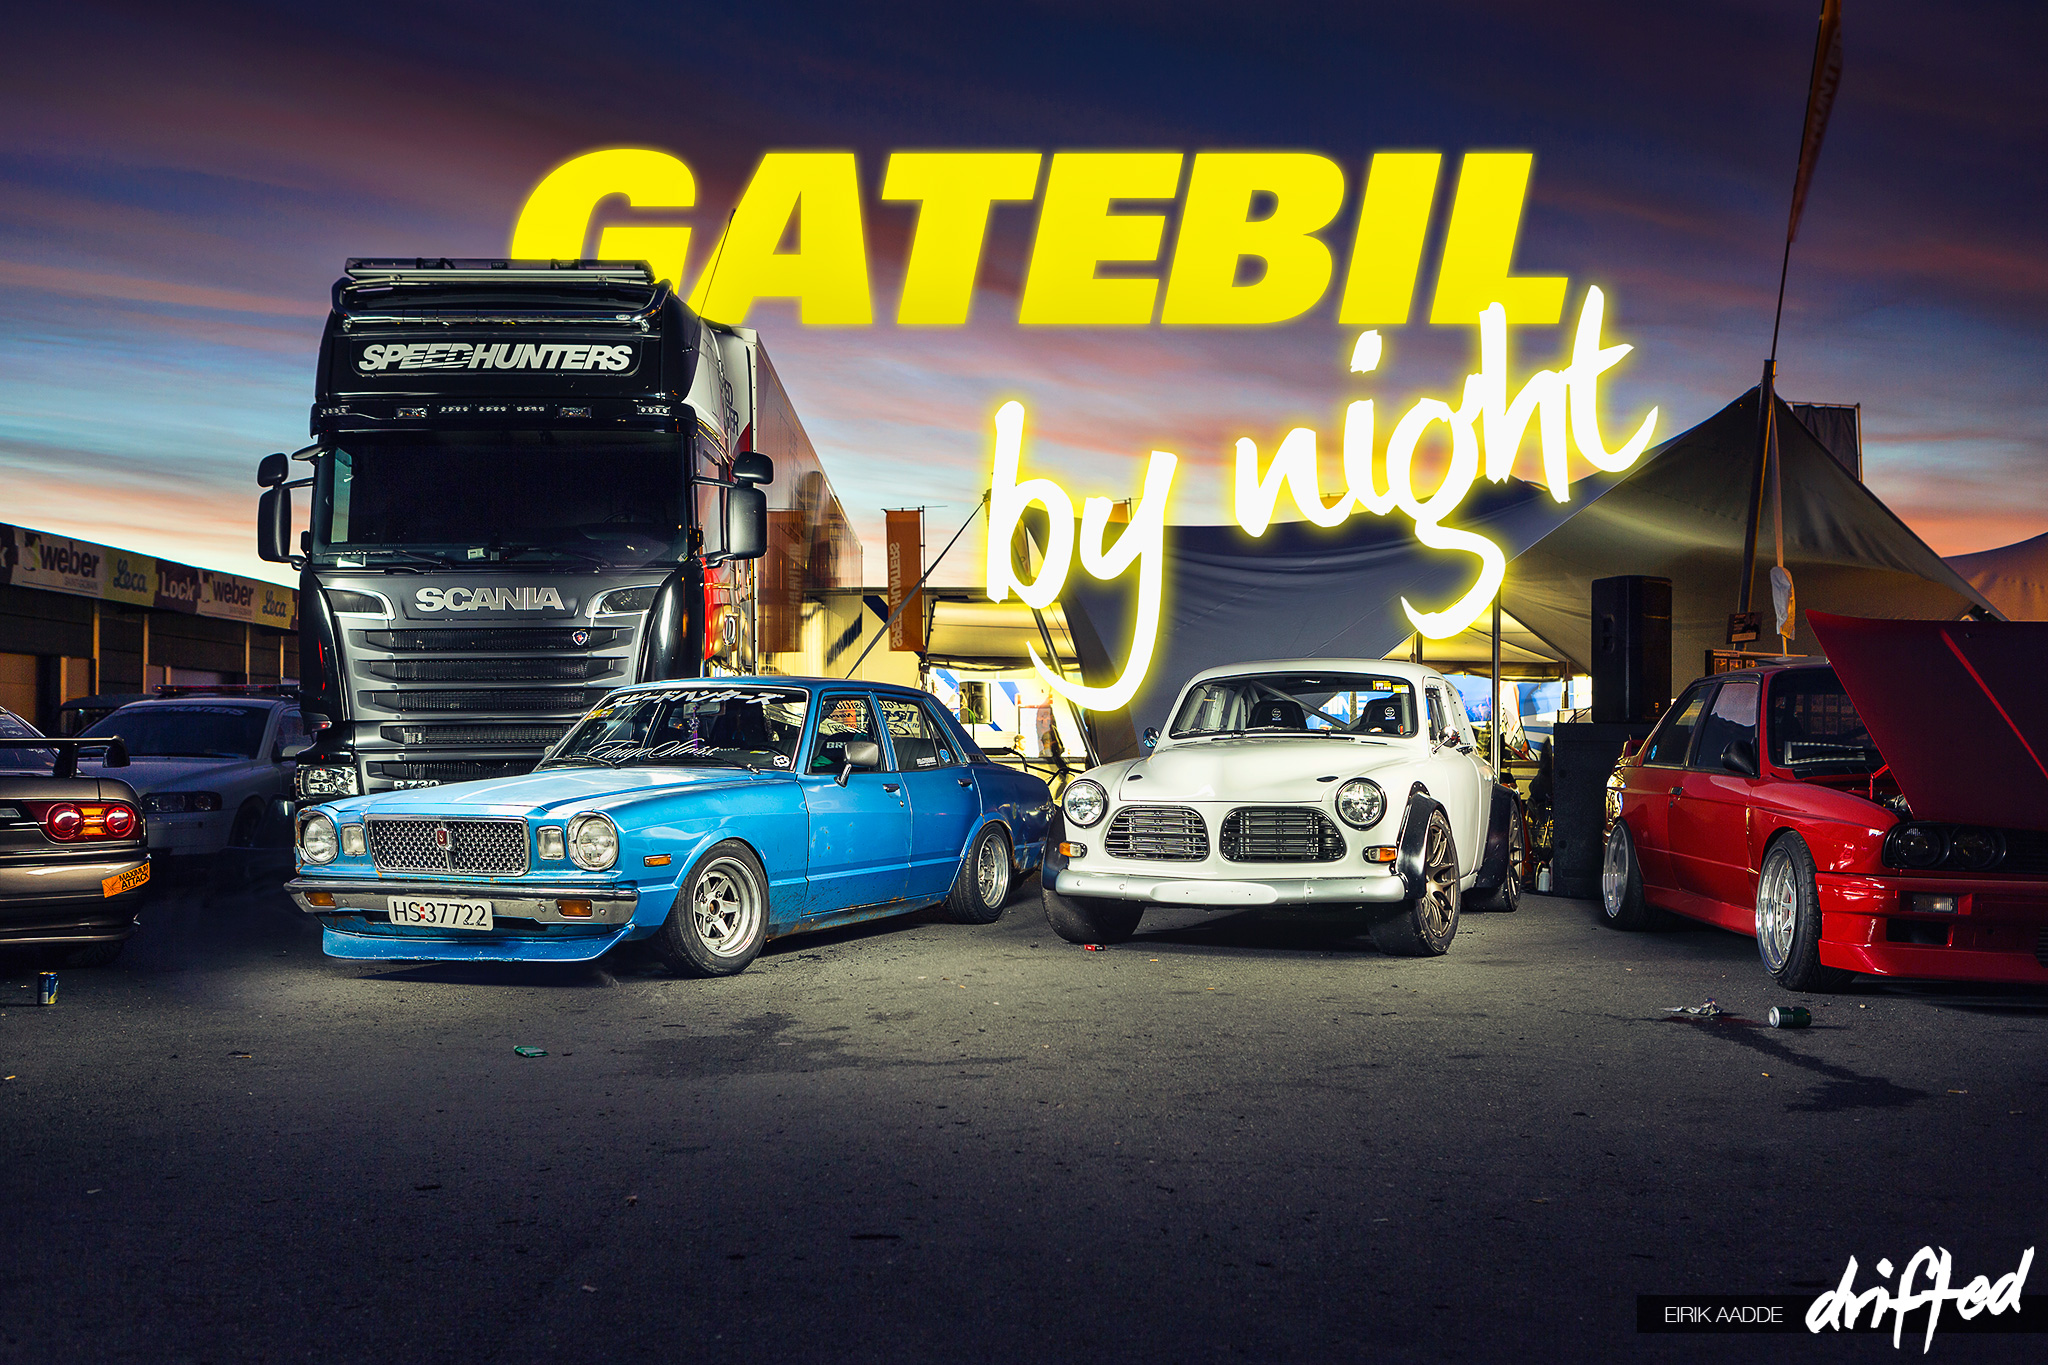 Gatebil_by-night